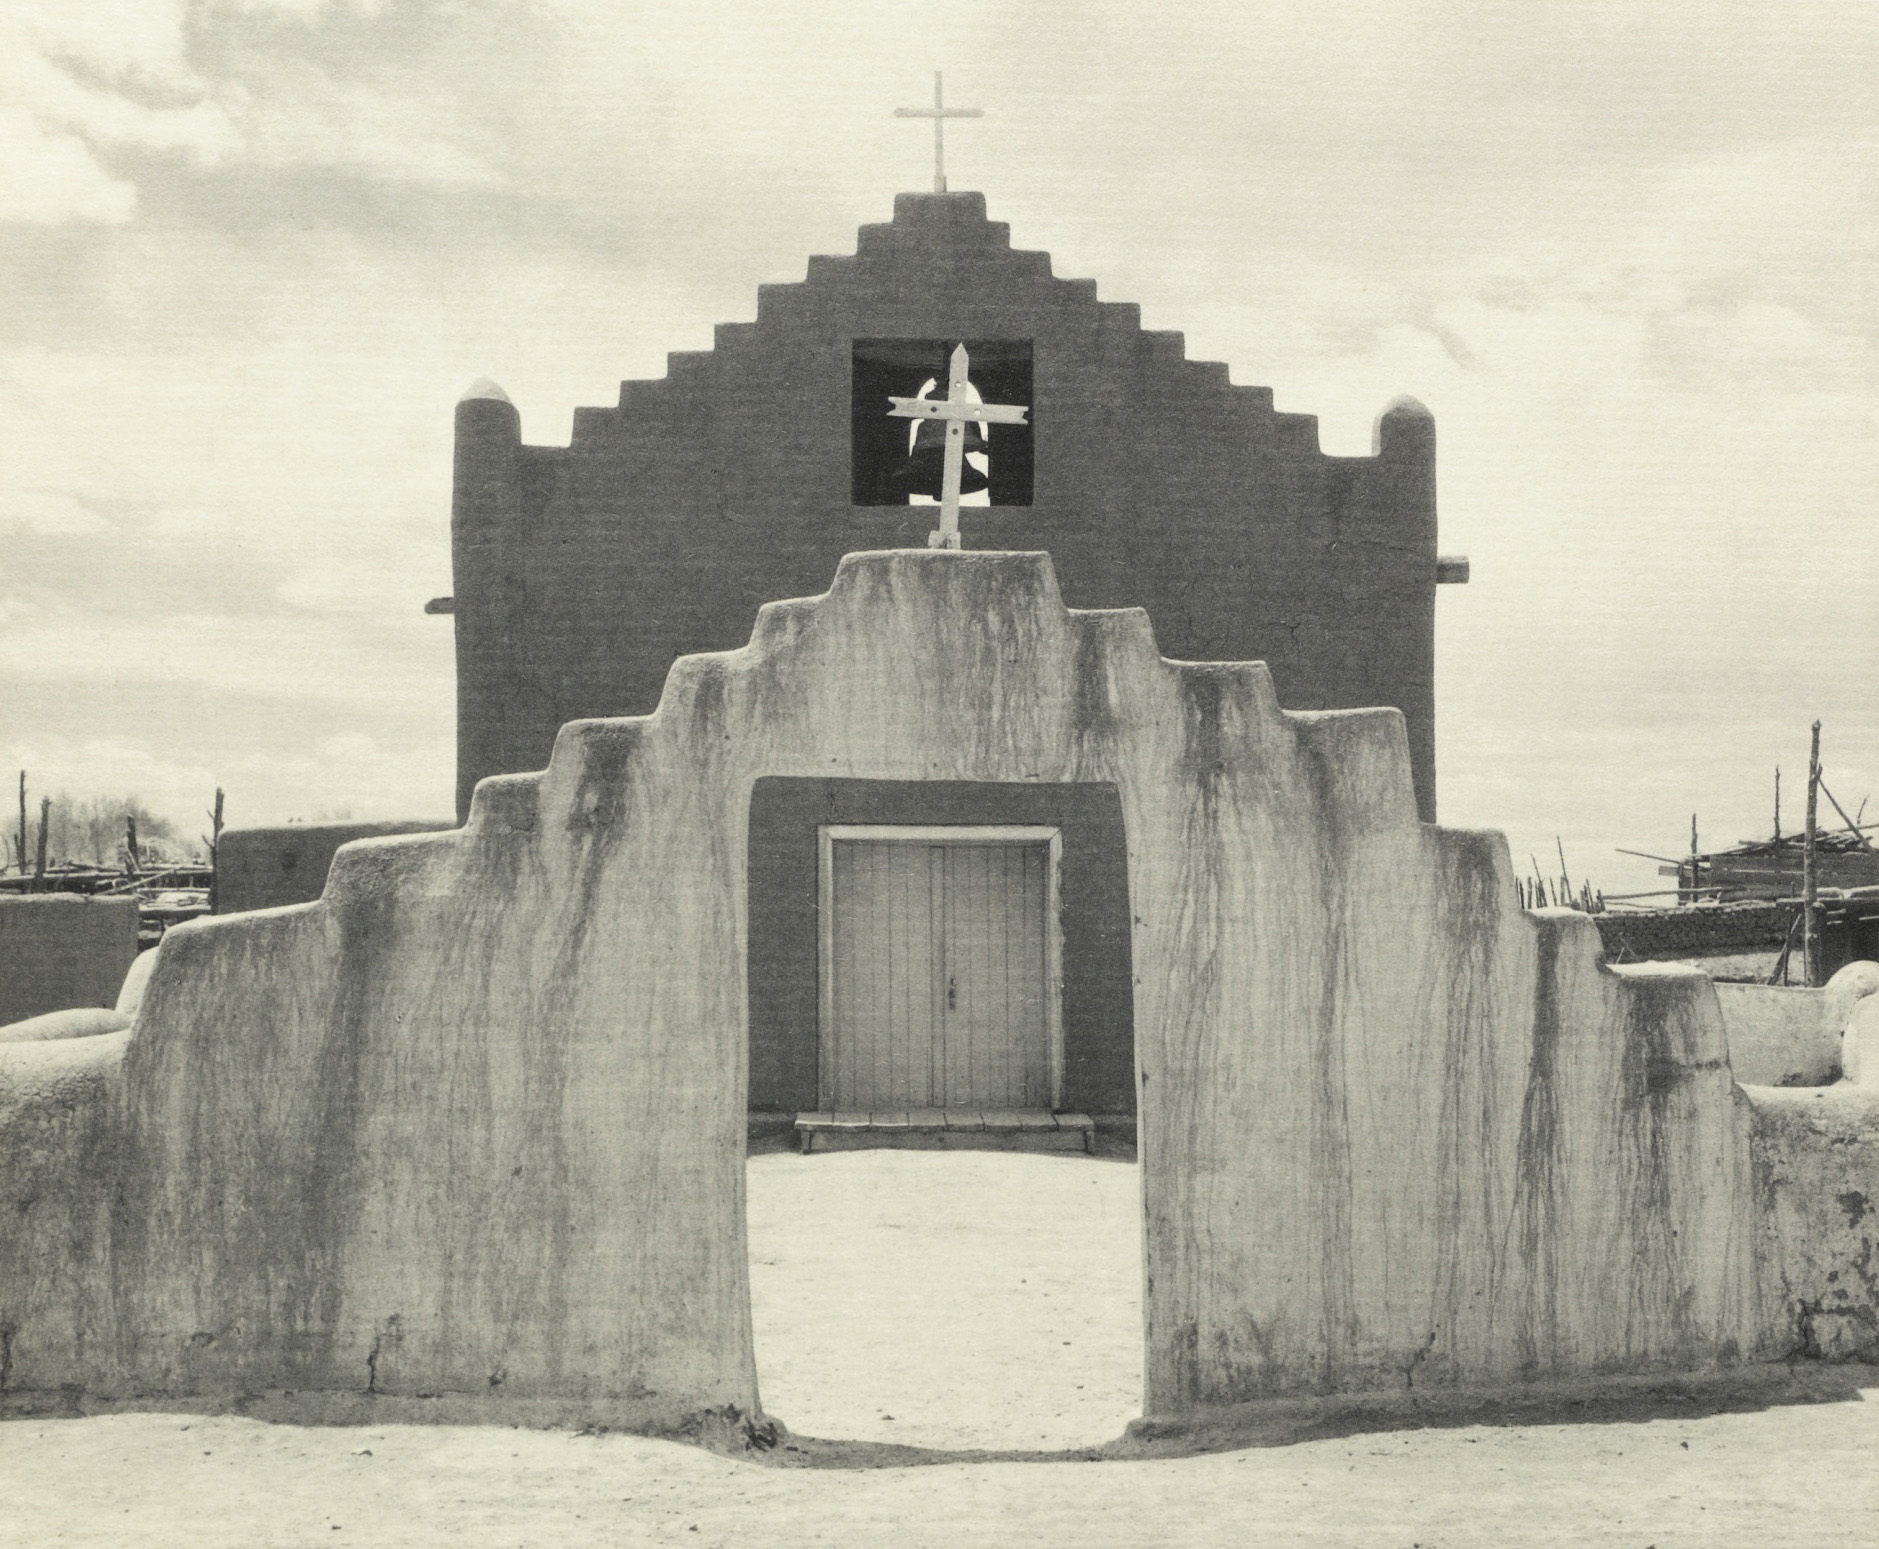 Ansel Adams' Taos Pueblo - Plate V - New Church